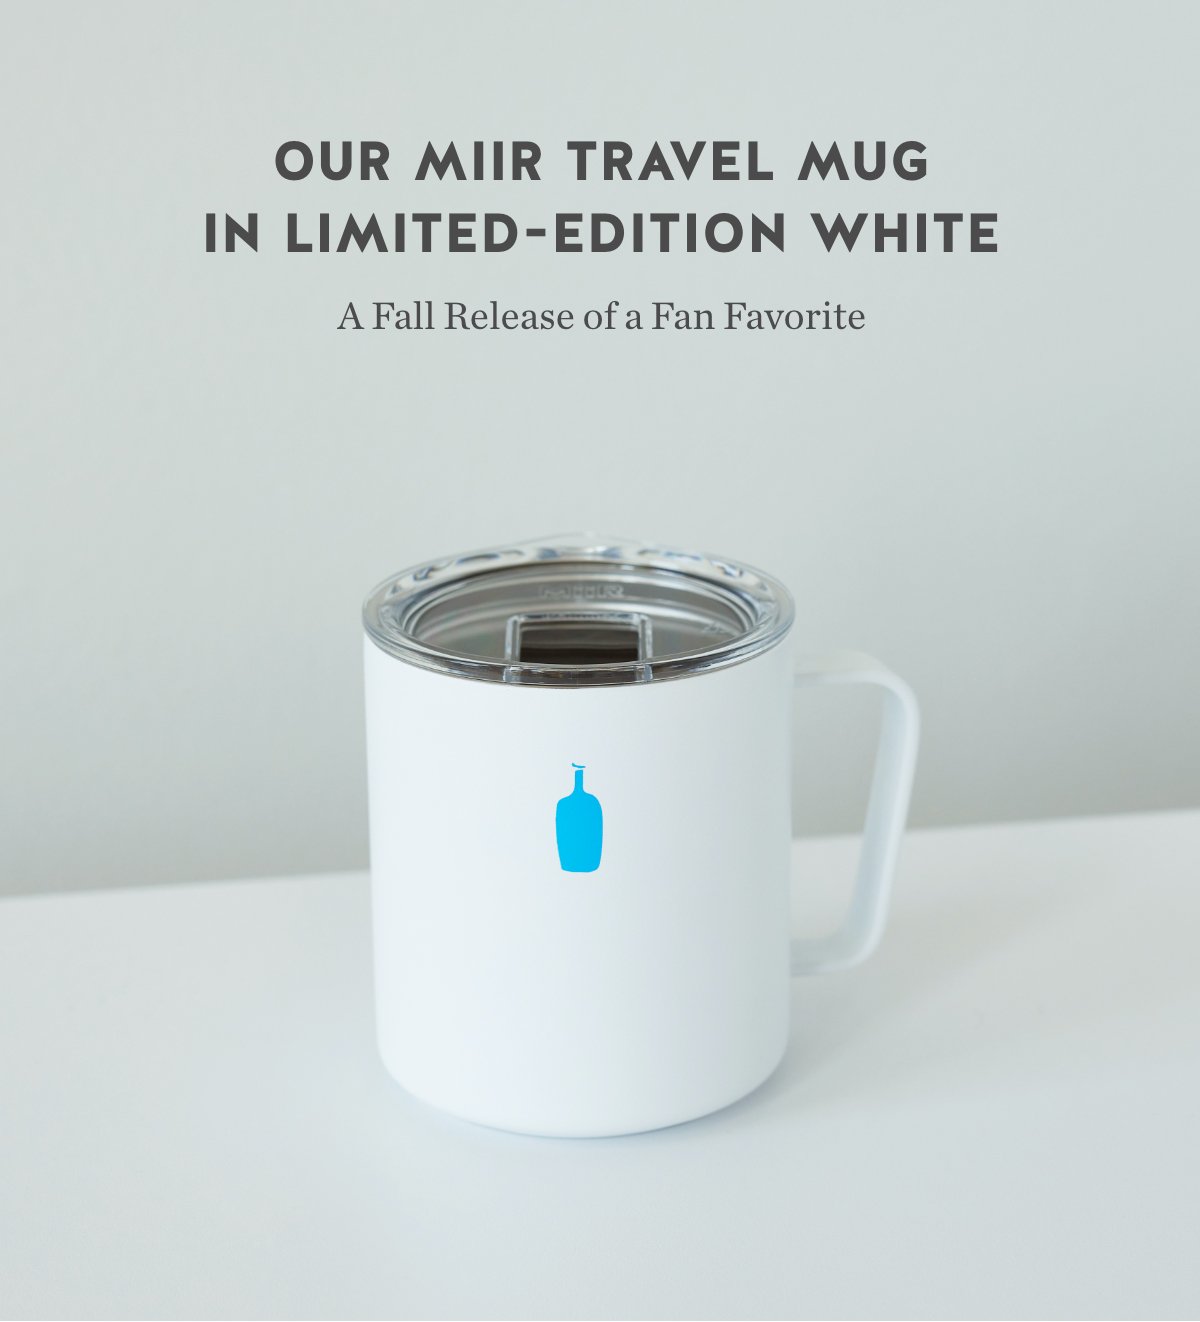 miir travel mug review